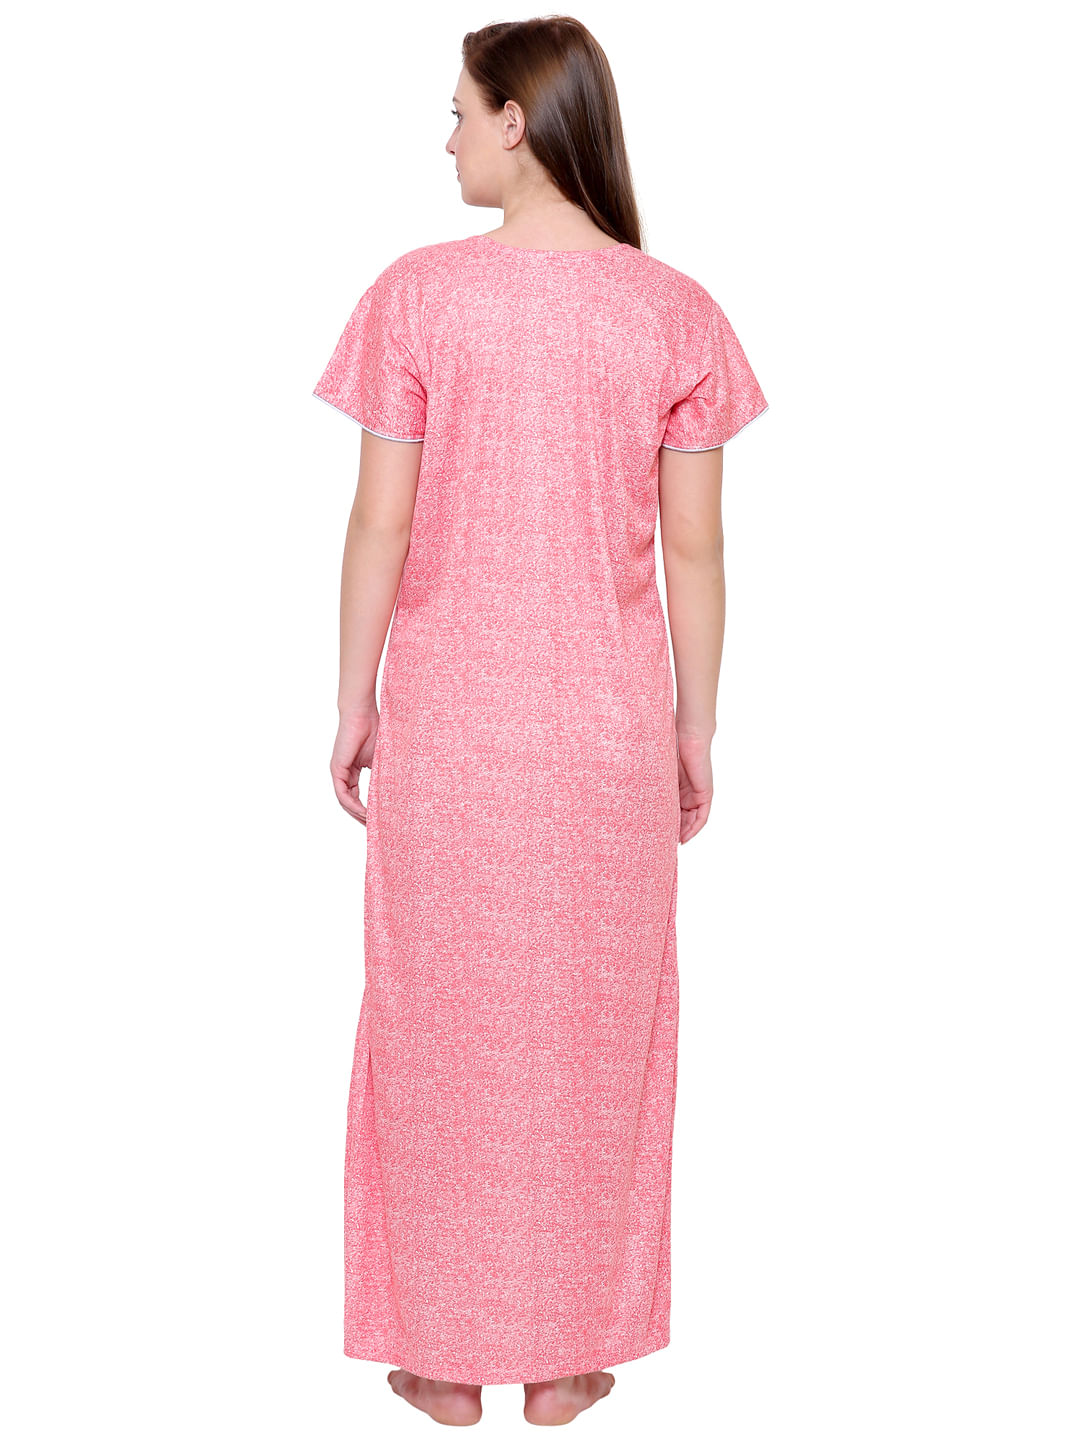 Pink Hosiery Printed Nightdress